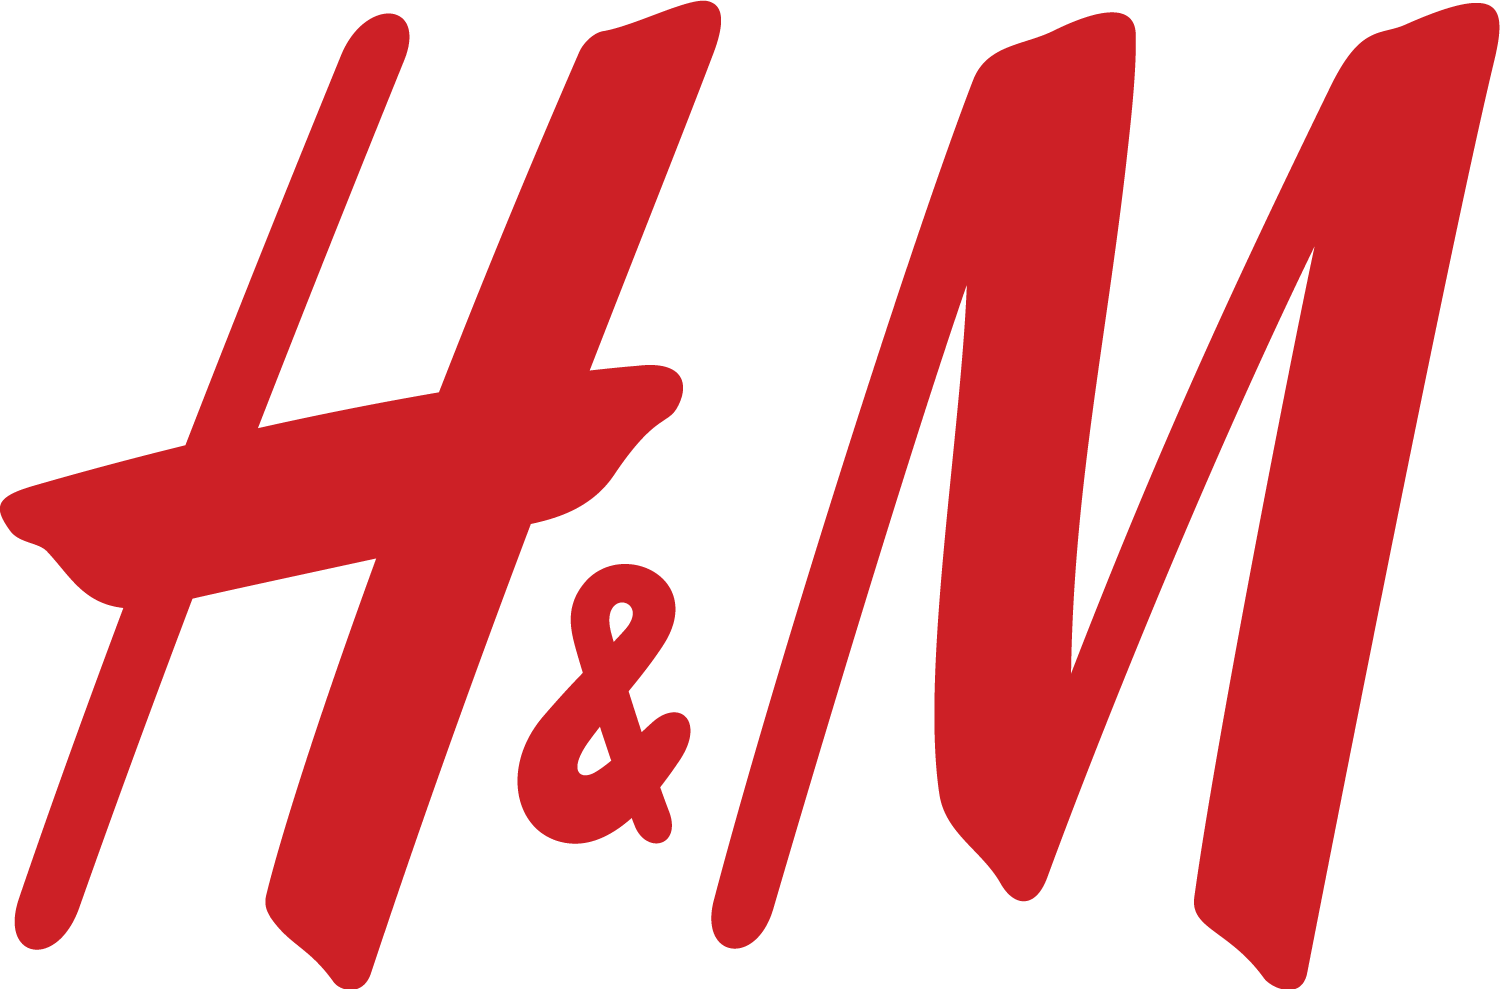 1655050391H&M logo.png